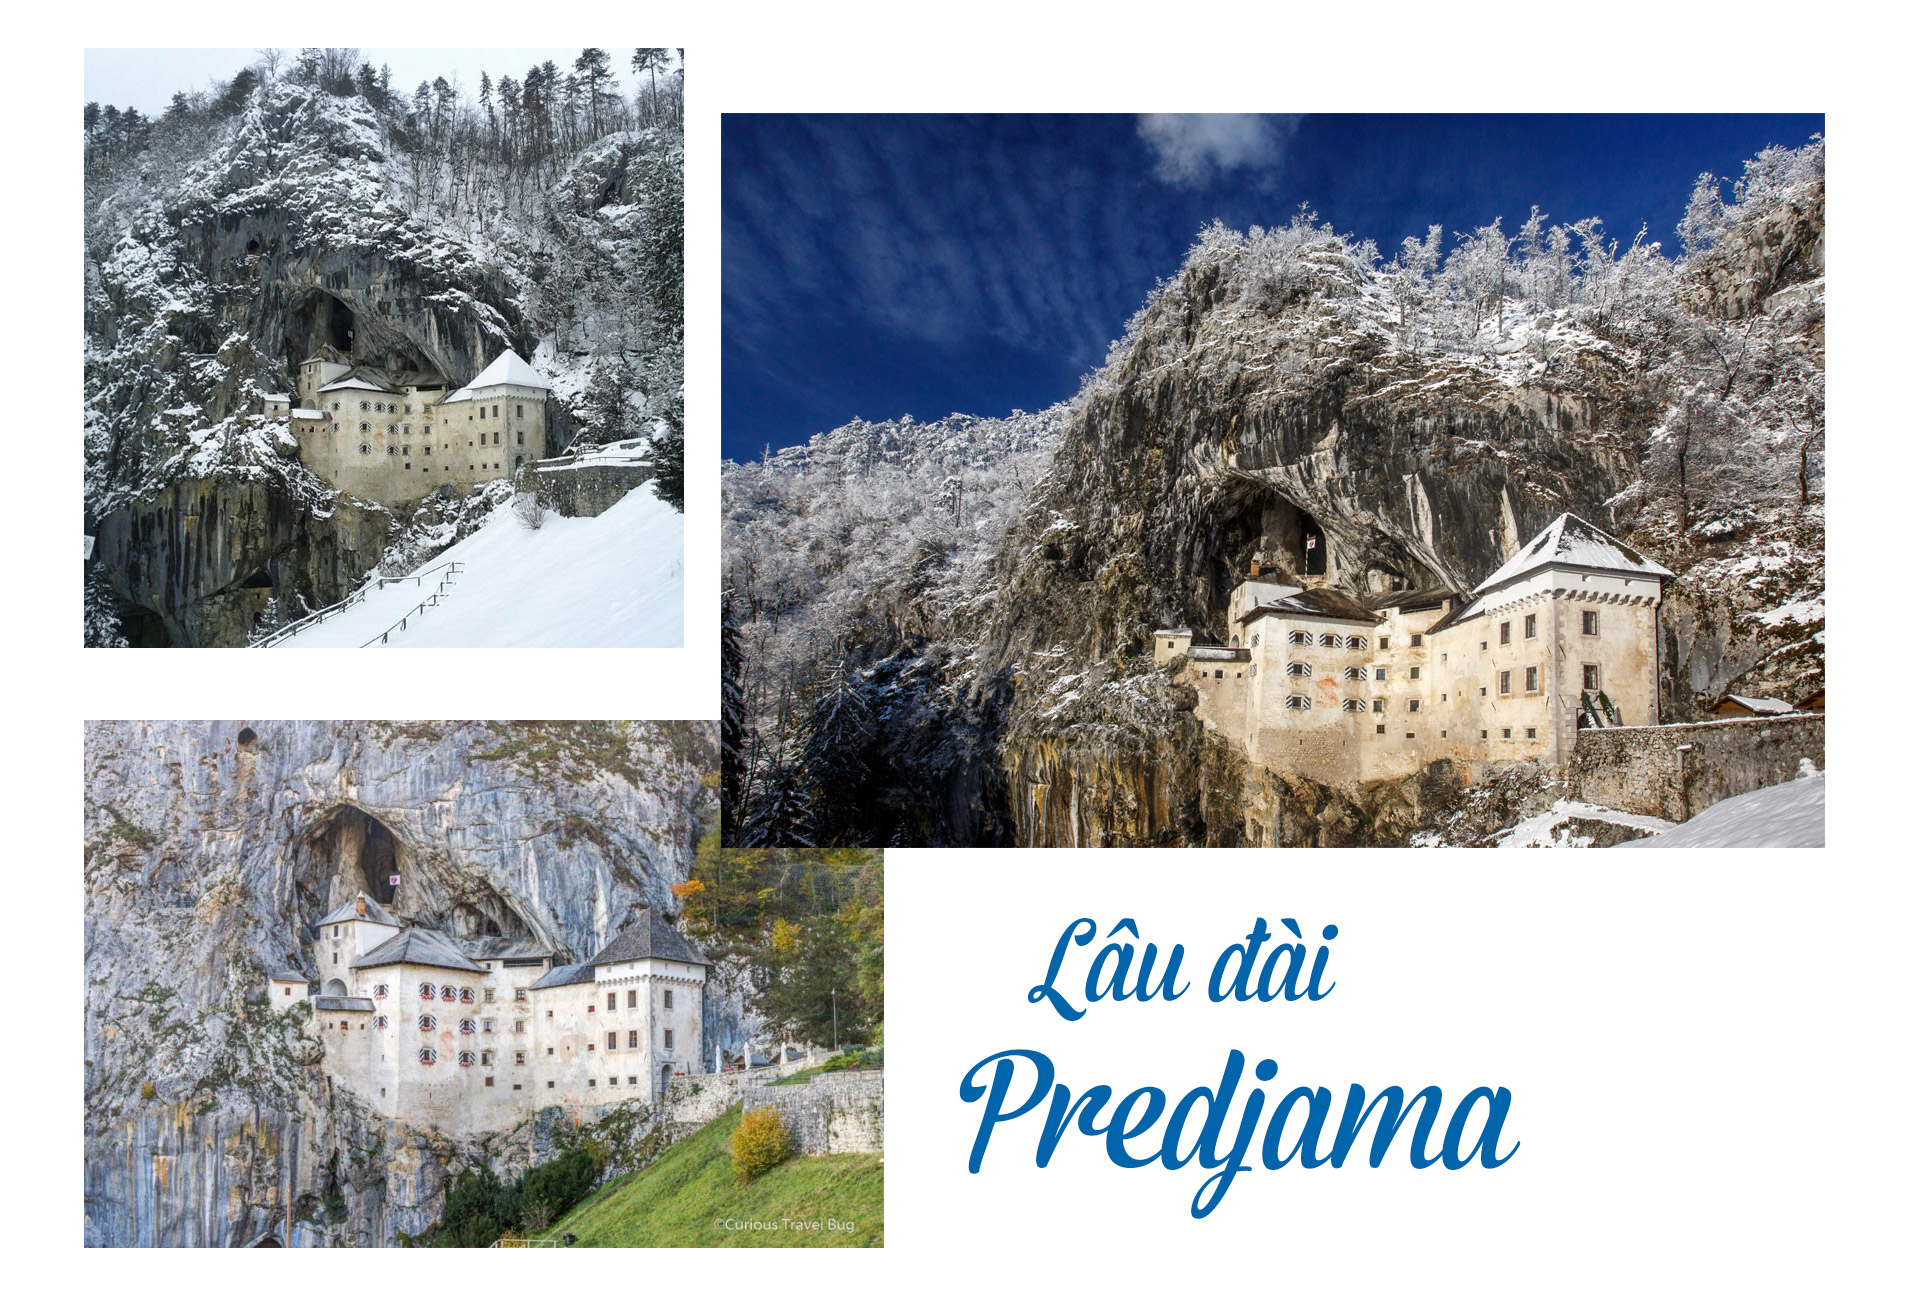 17 lâu đài cổ tích châu Âu đáng đến thăm vào mùa đông - 9